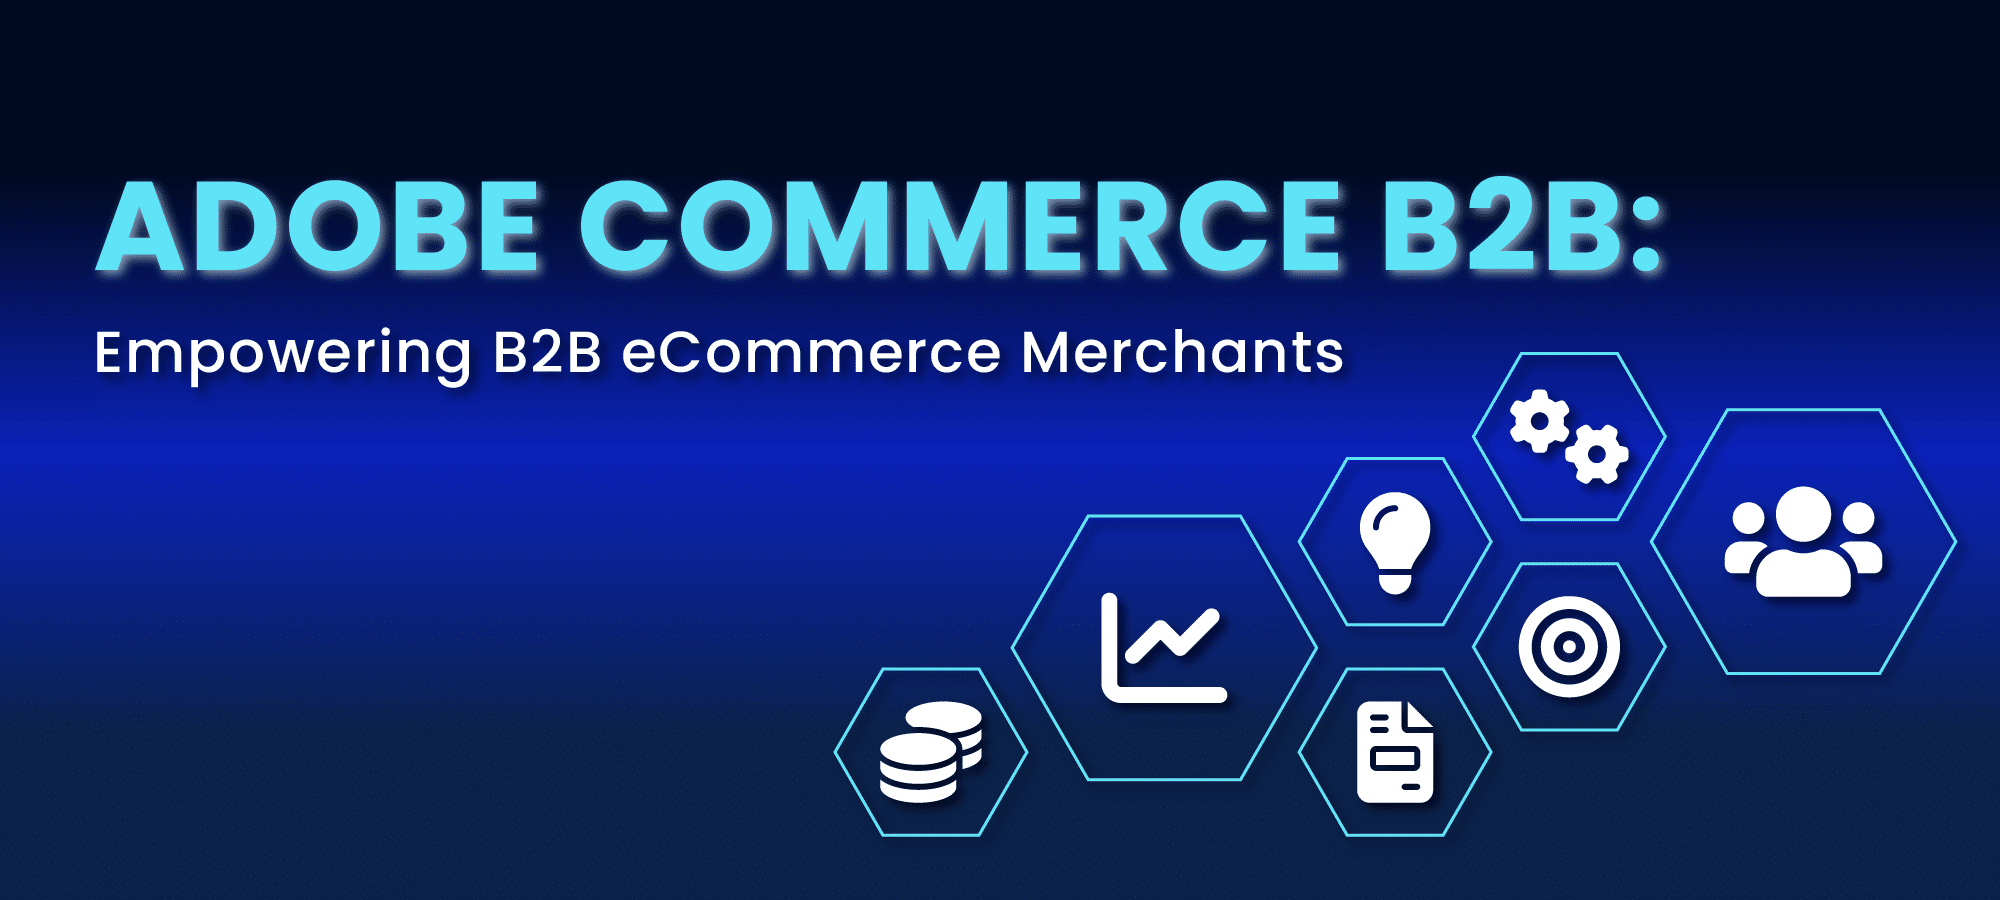 Adobe Commerce B2B